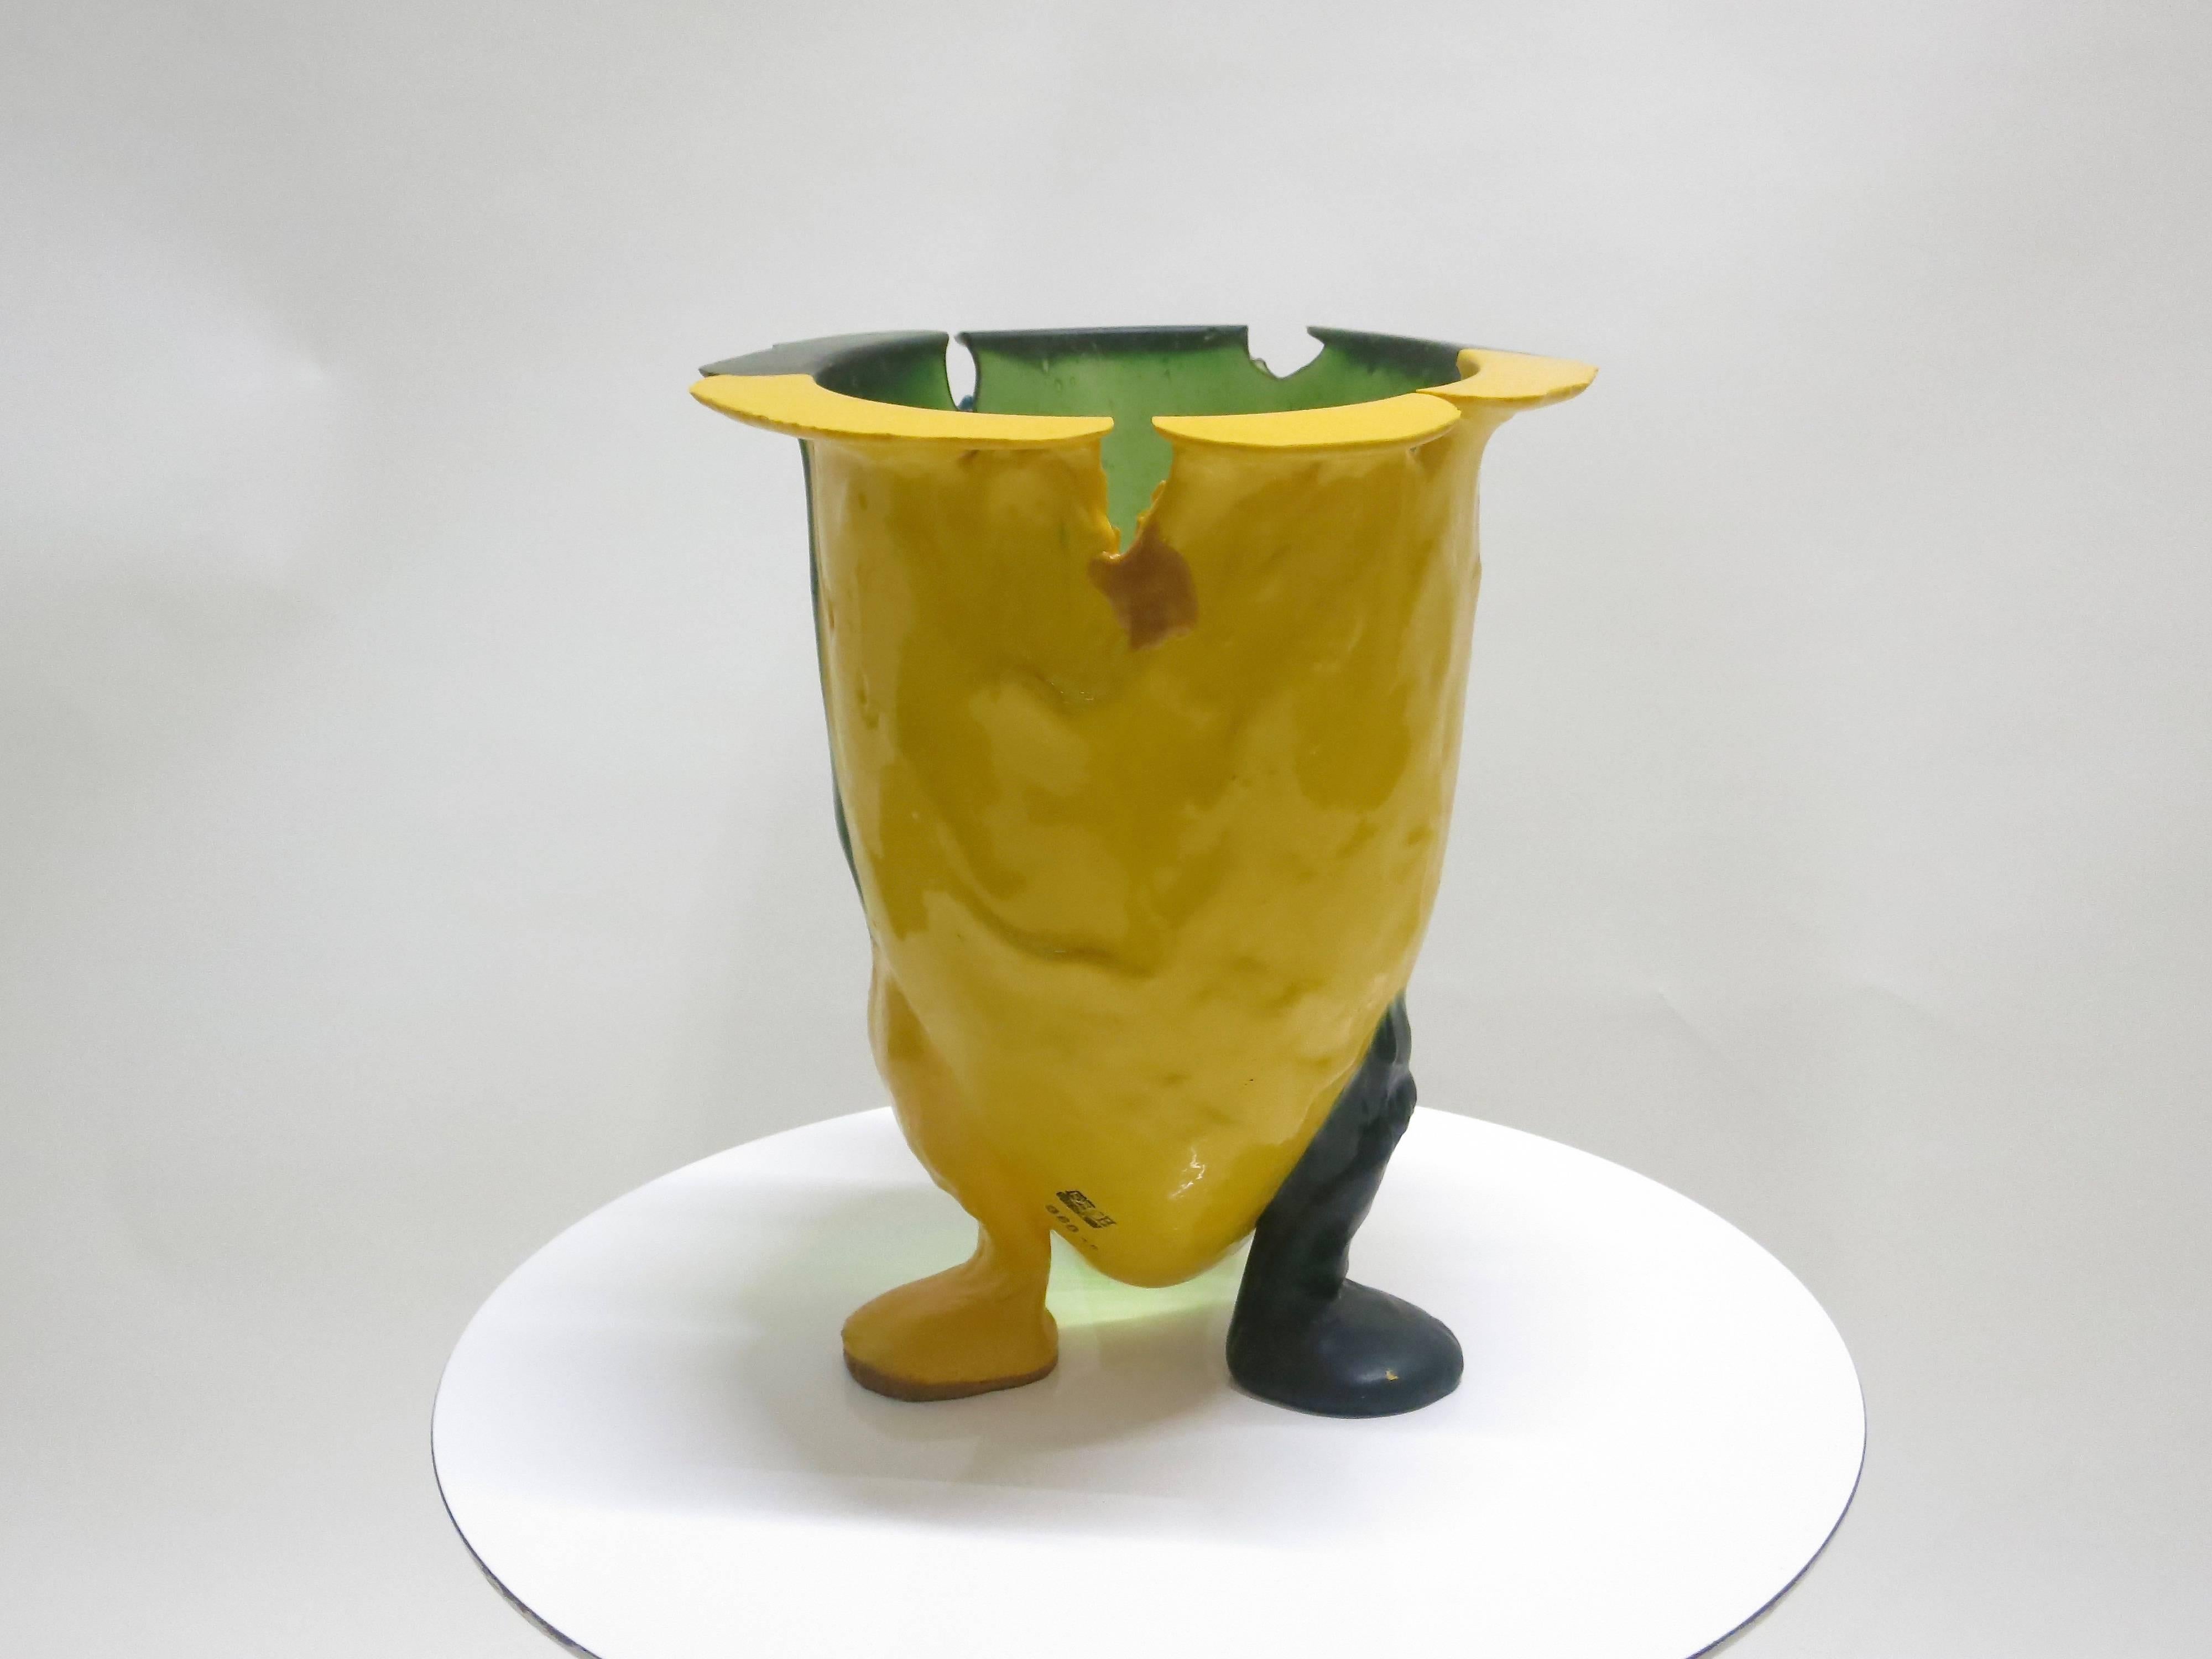 Leuchtend gelbes und grünes Weichharz. Die Farben verschmelzen zu einem fabelhaften Beispiel für  Gaetano Pesce Amazonia Vase. Gestanztes Fisch-Design. In den 1990er Jahren vom Künstler erworben. Einzeleigentümer alle Informationen auf Anfrage